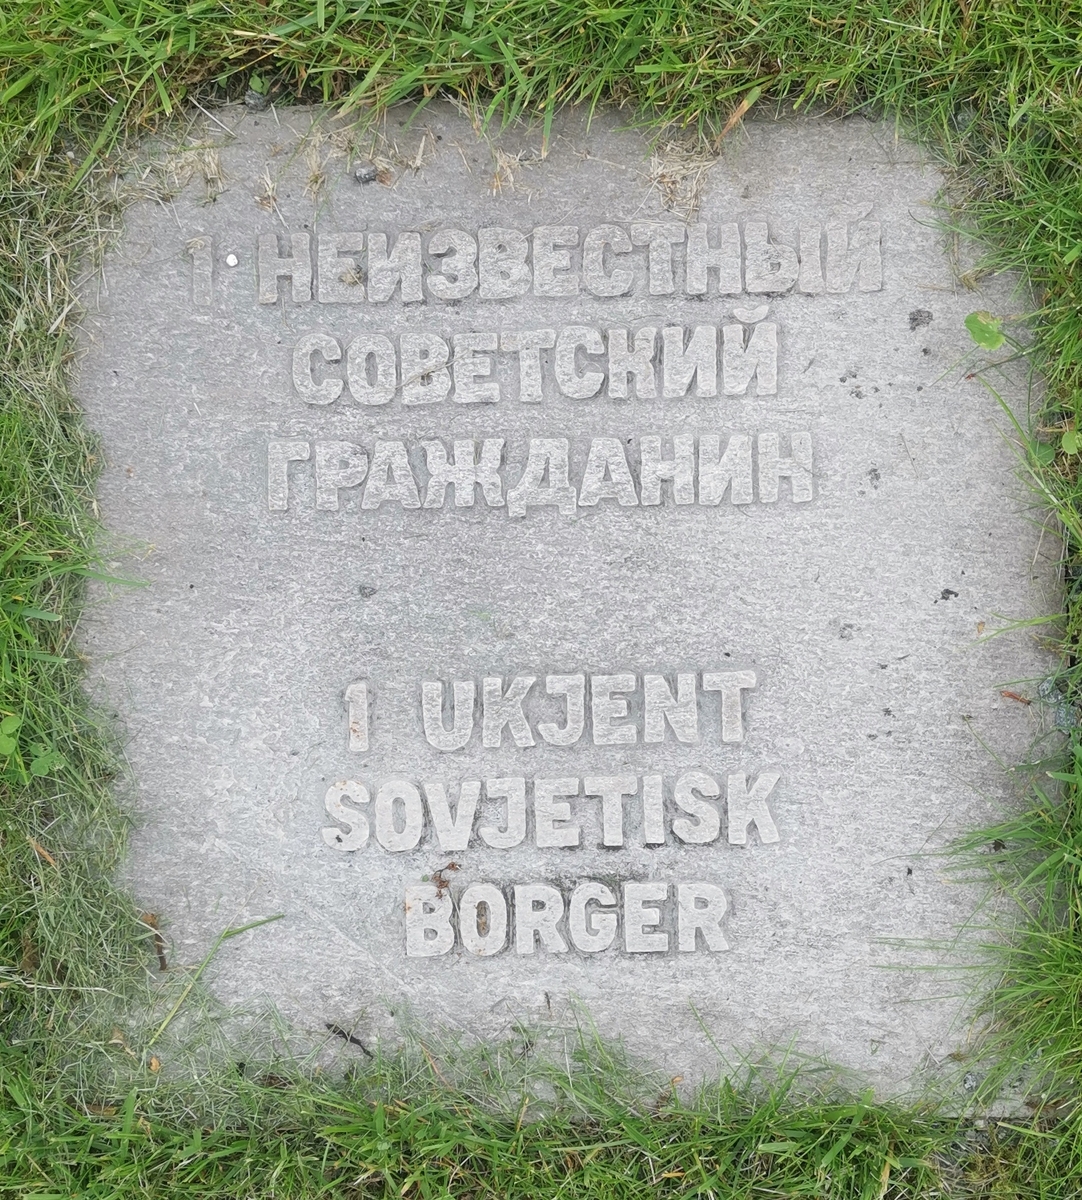 Gravminne på Aukra kirkegård merket "1 ukjent sovjetisk borger".